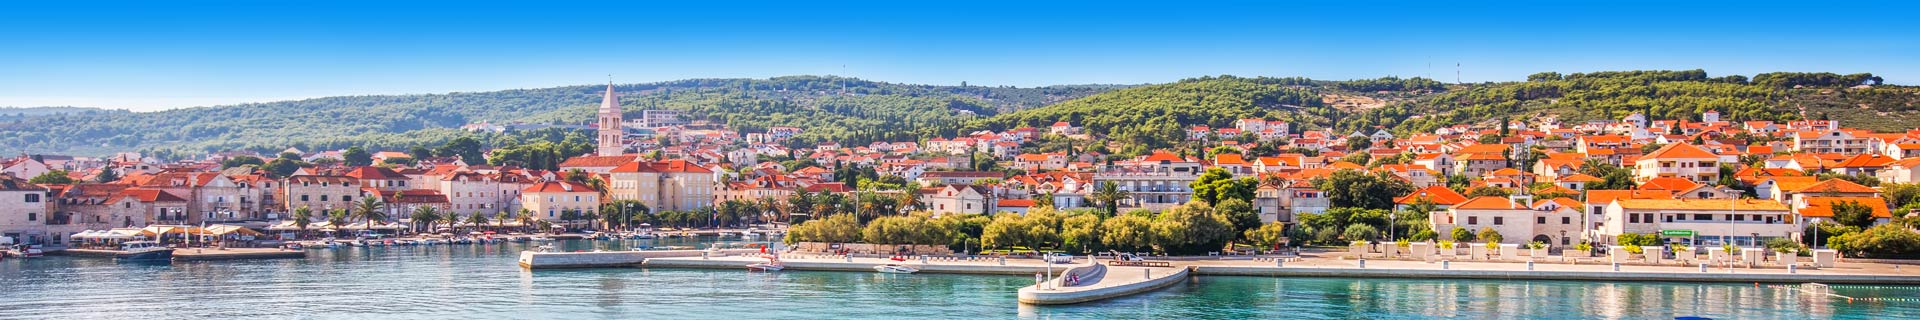 kan ik op vakantie naar kroatie?